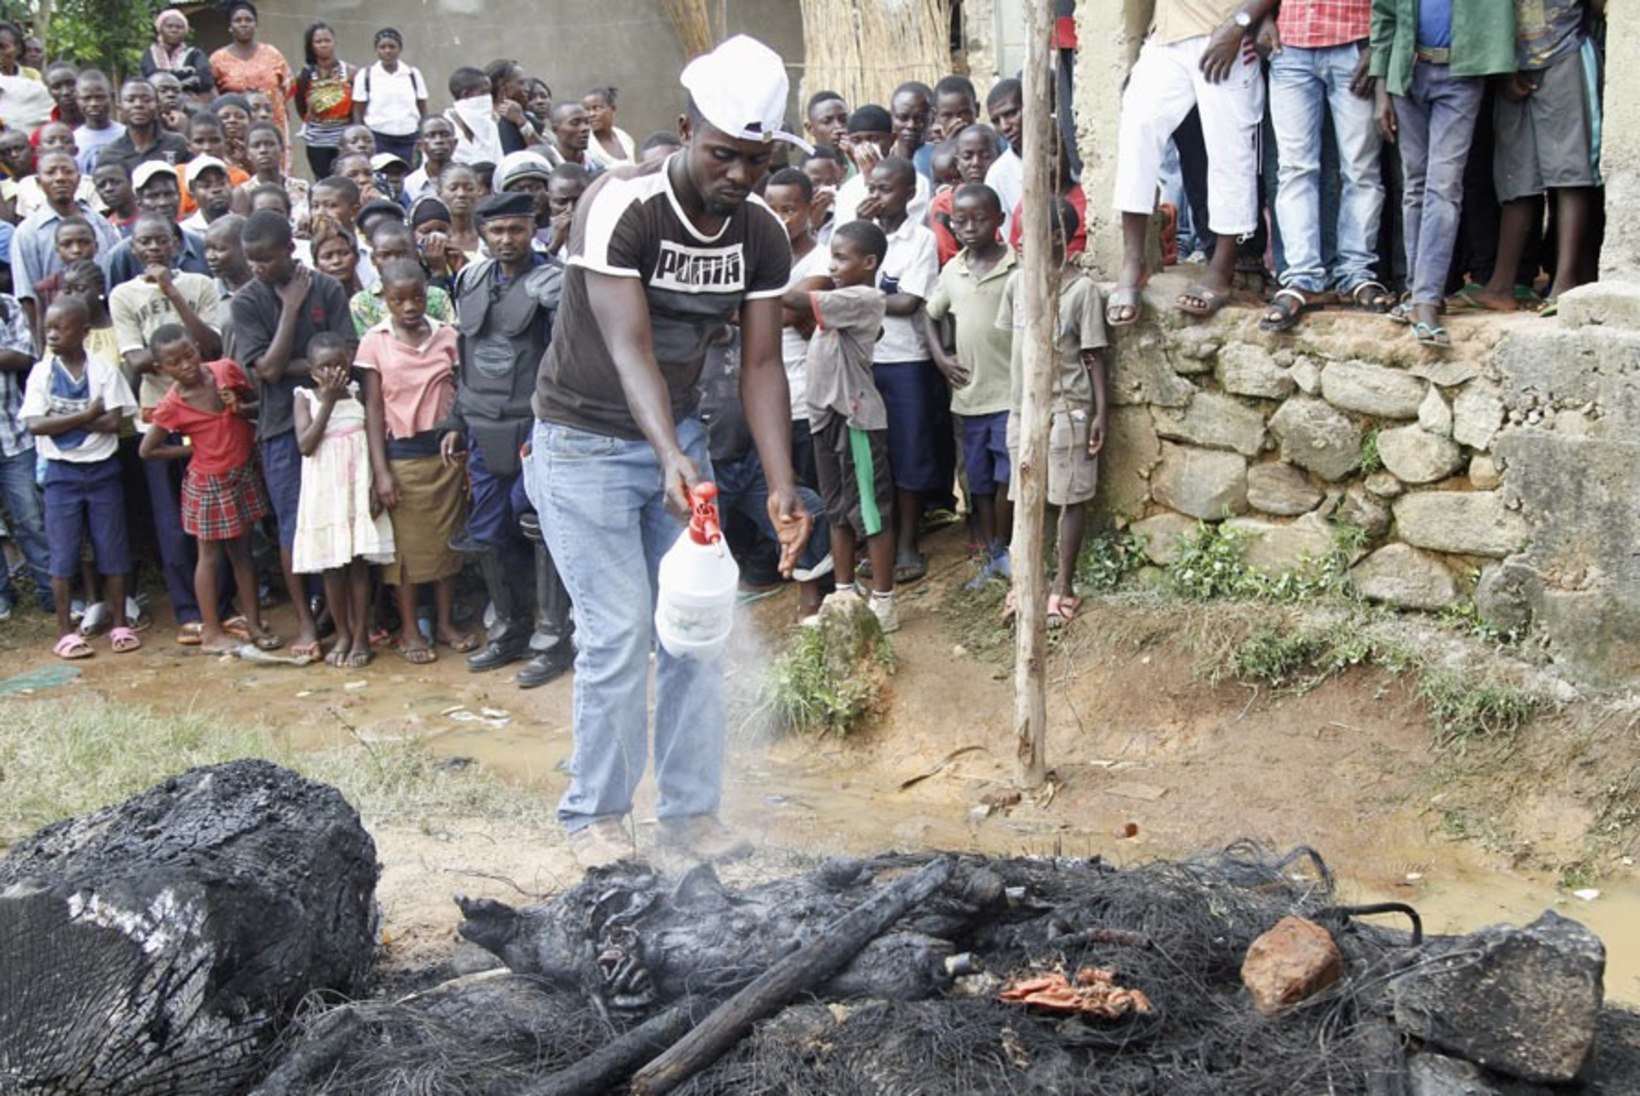 FOTOD: Kongos pilluti kahtlane mees kividega surnuks, põletati ja söödi